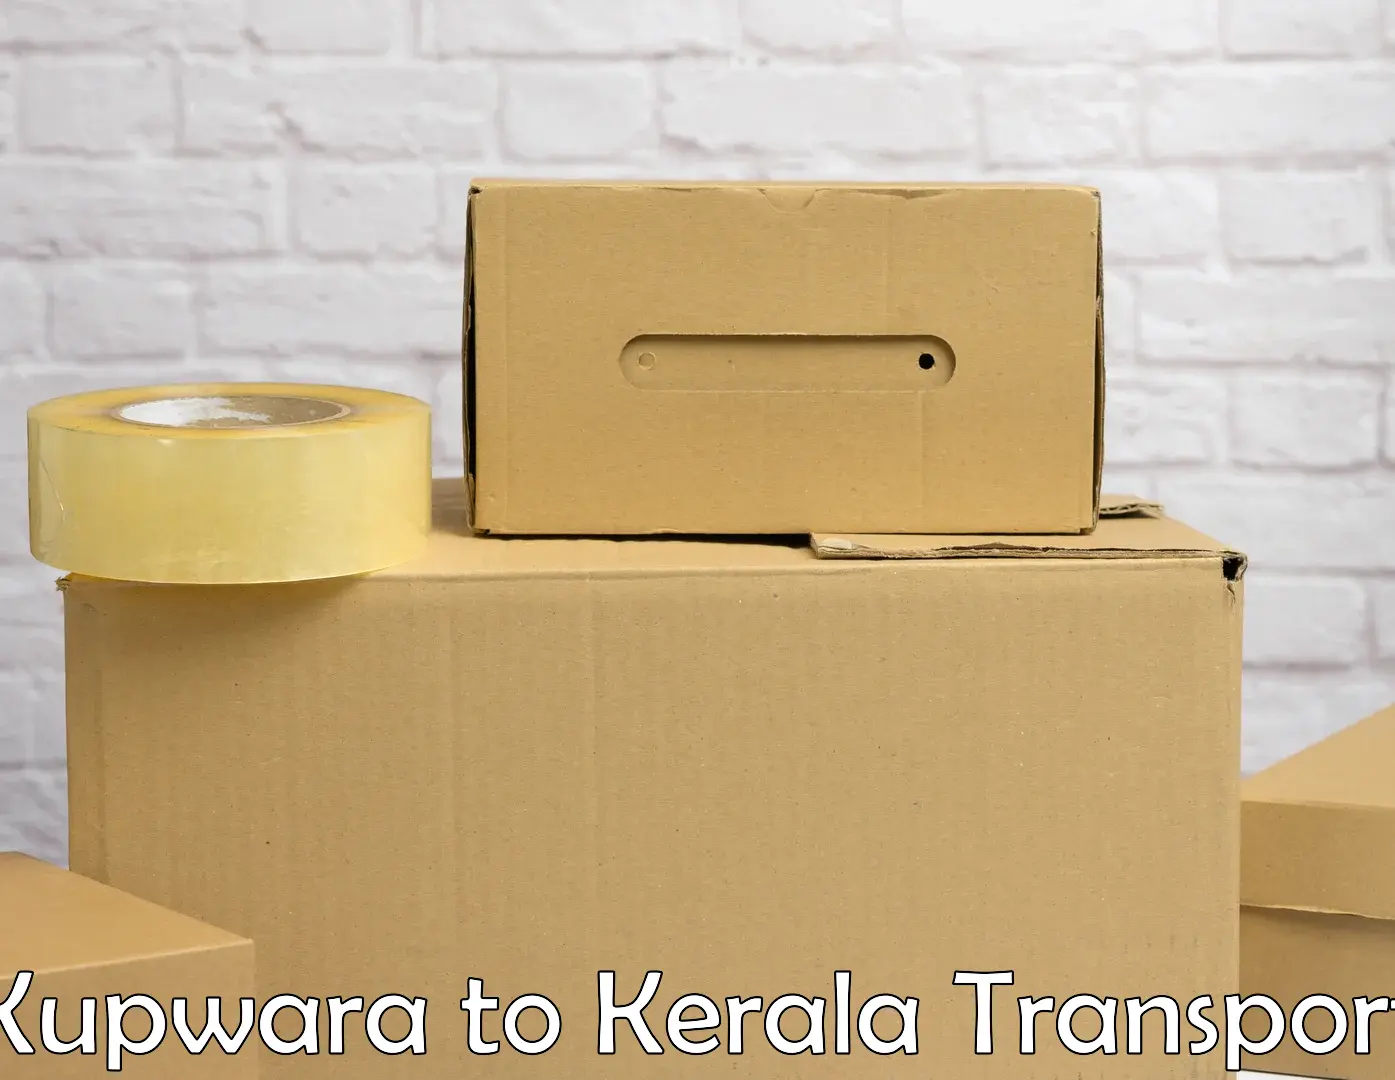 Nearest transport service Kupwara to Kothanalloor